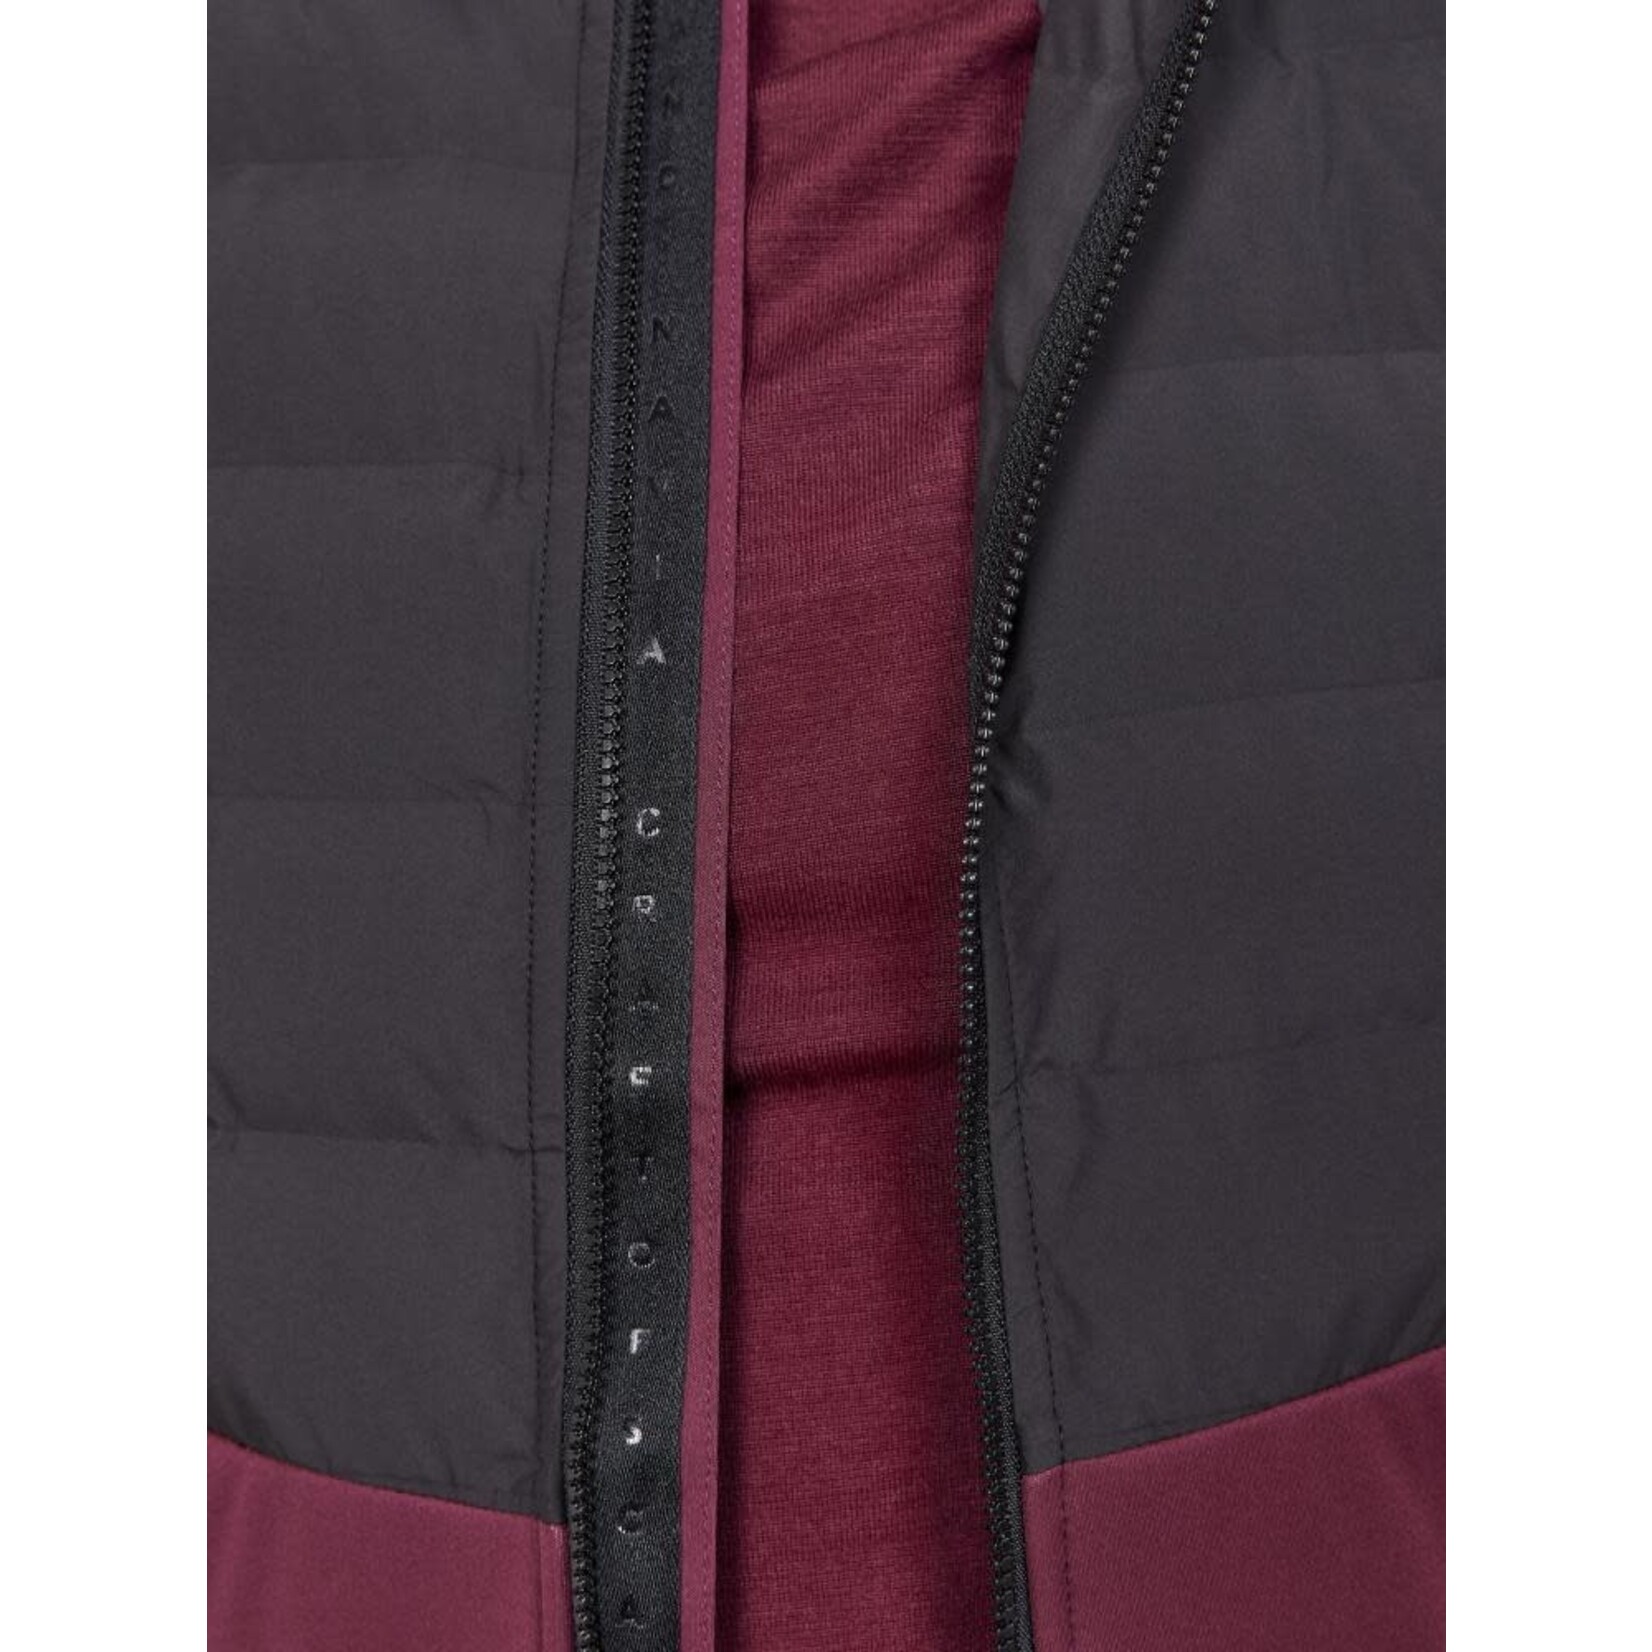 Craft ADV Pursuit Thermal Jacket W (manteau pour femme)